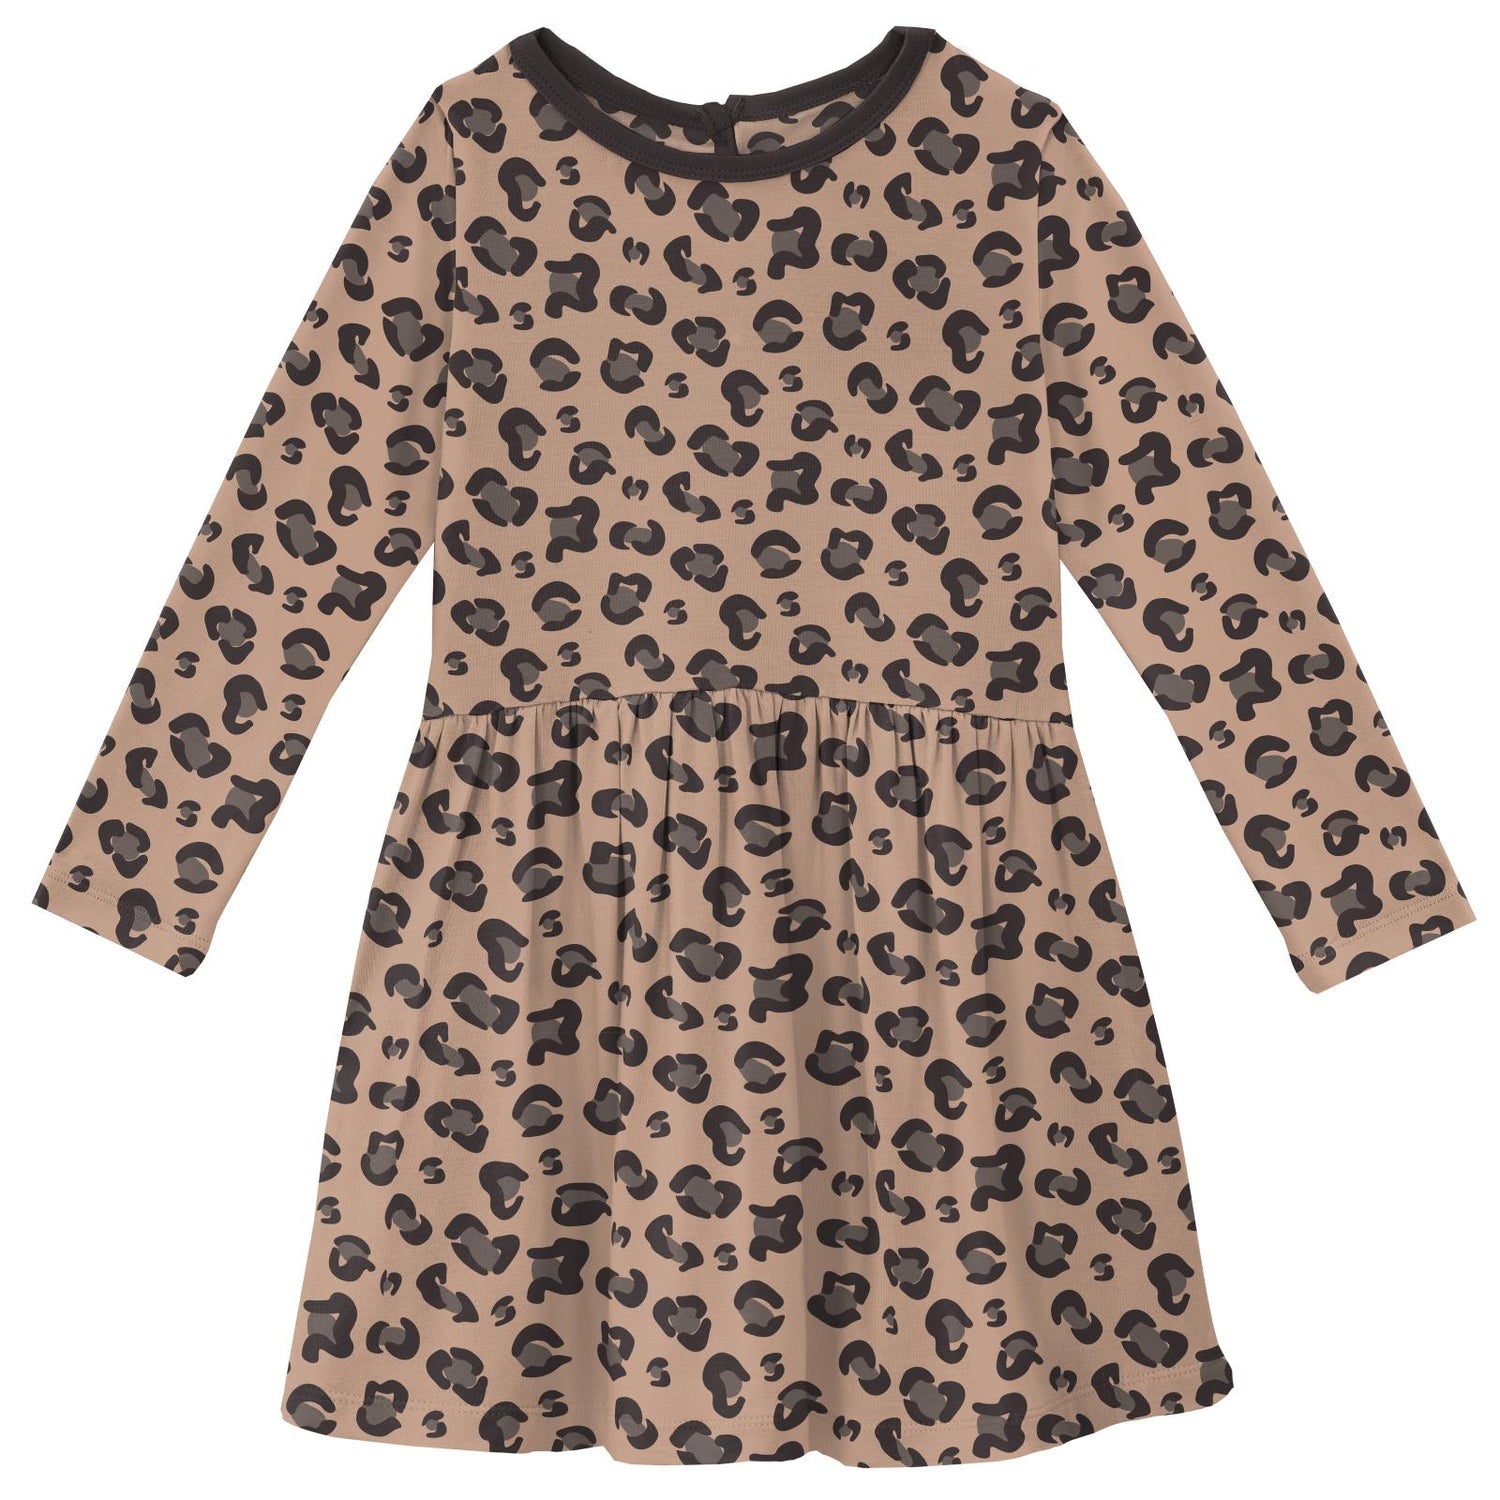 Print Long Sleeve Twirl Dress in Suede Cheetah Print